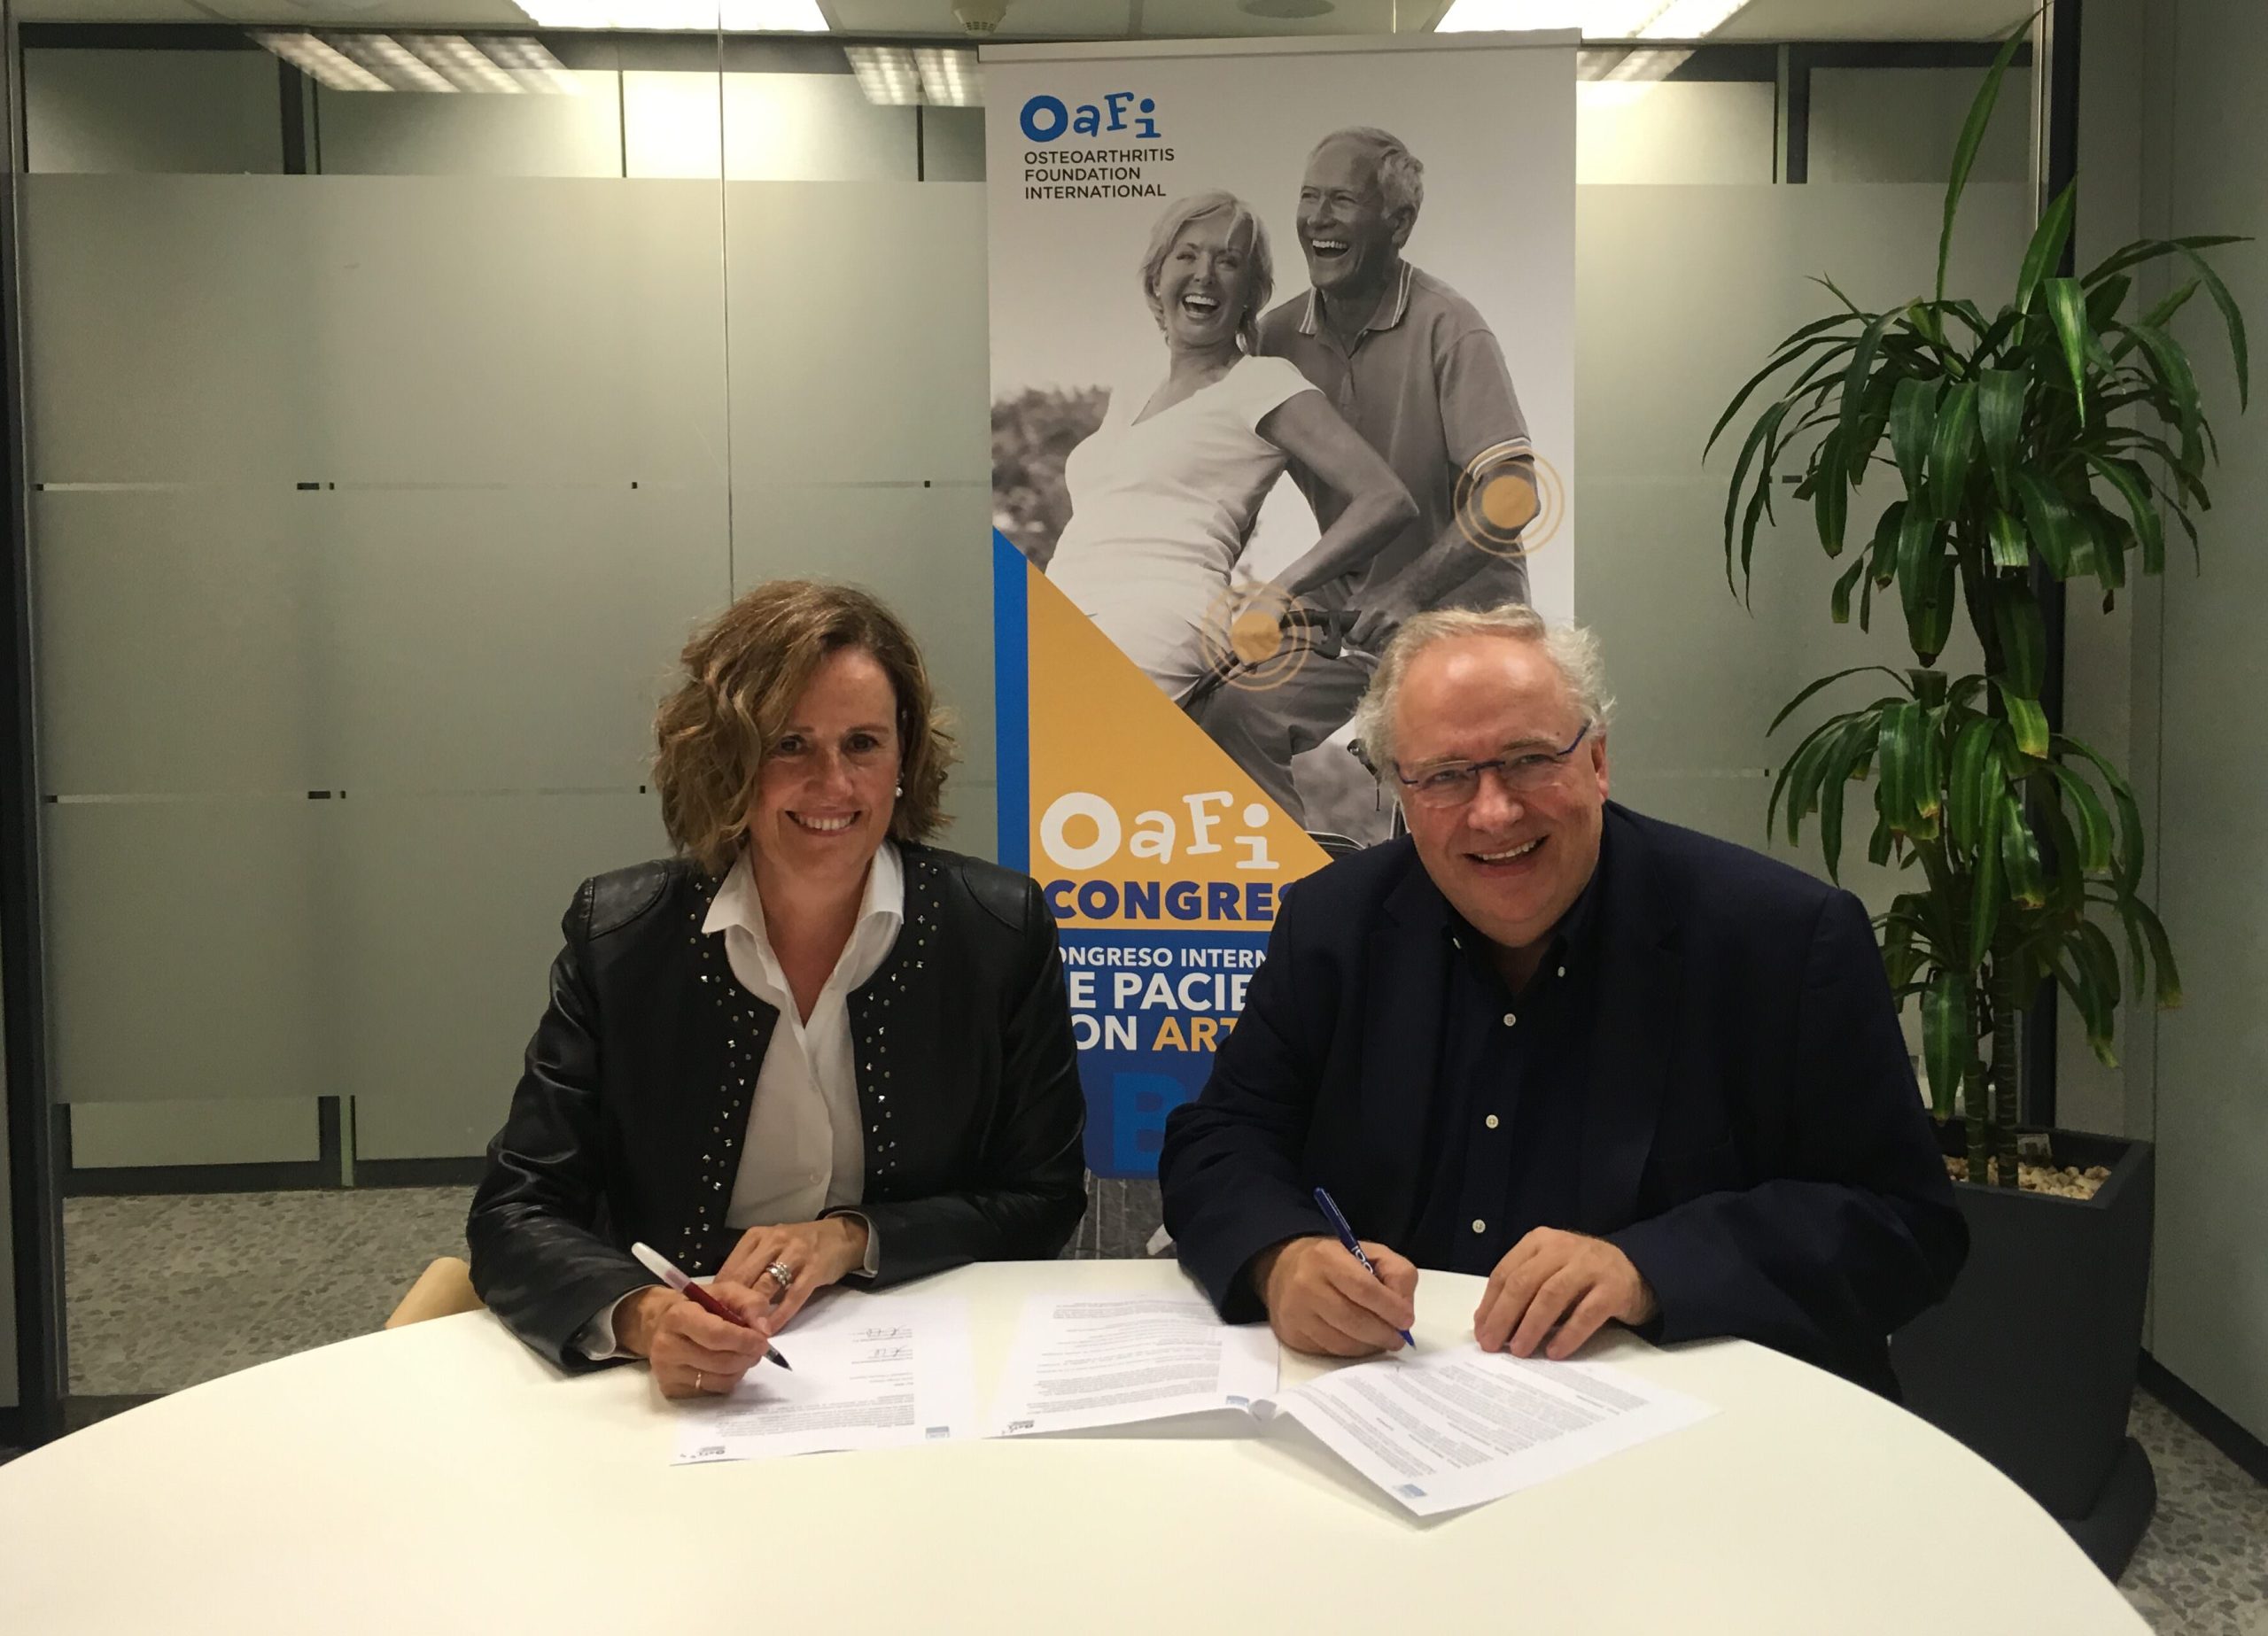 La cadena de clubs deportivos DiR y la Fundación OAFI colaboran para fomentar la práctica del deporte de forma saludable